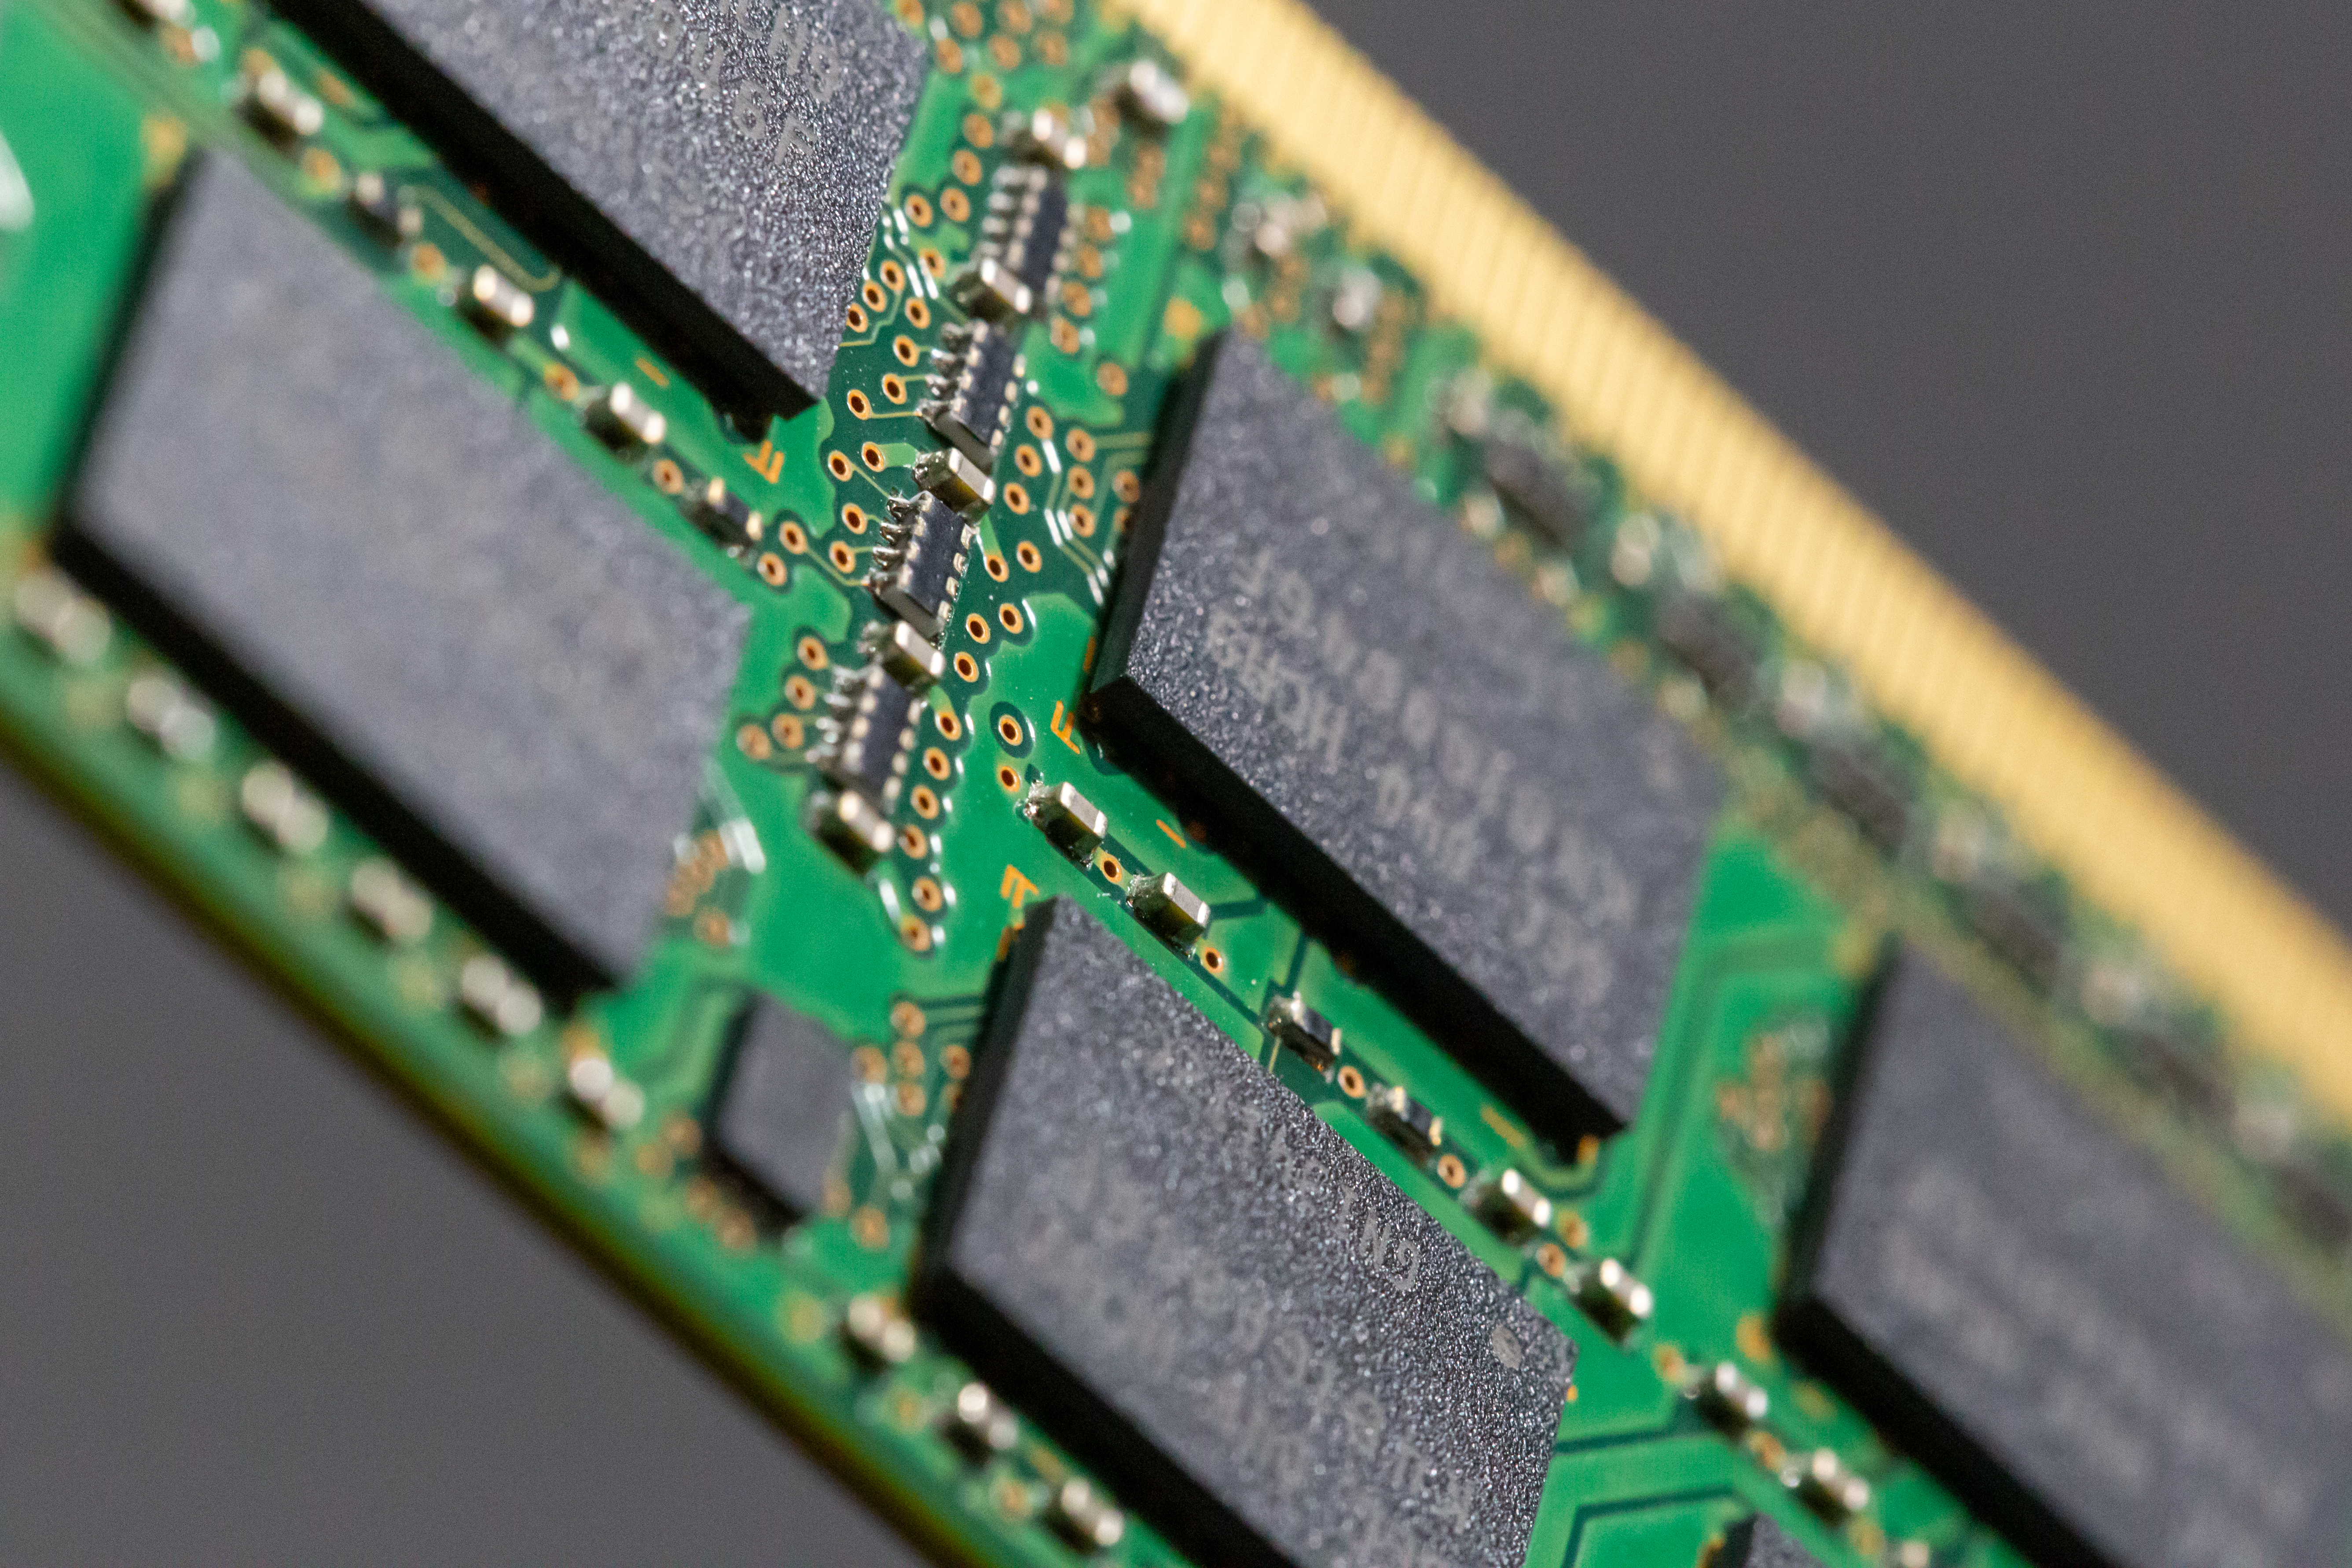 Imaging component. Чипы памяти для Ram. Оперативная память на чипах Micron. Перегретый чип памяти. Чипы оперативной памяти производители.